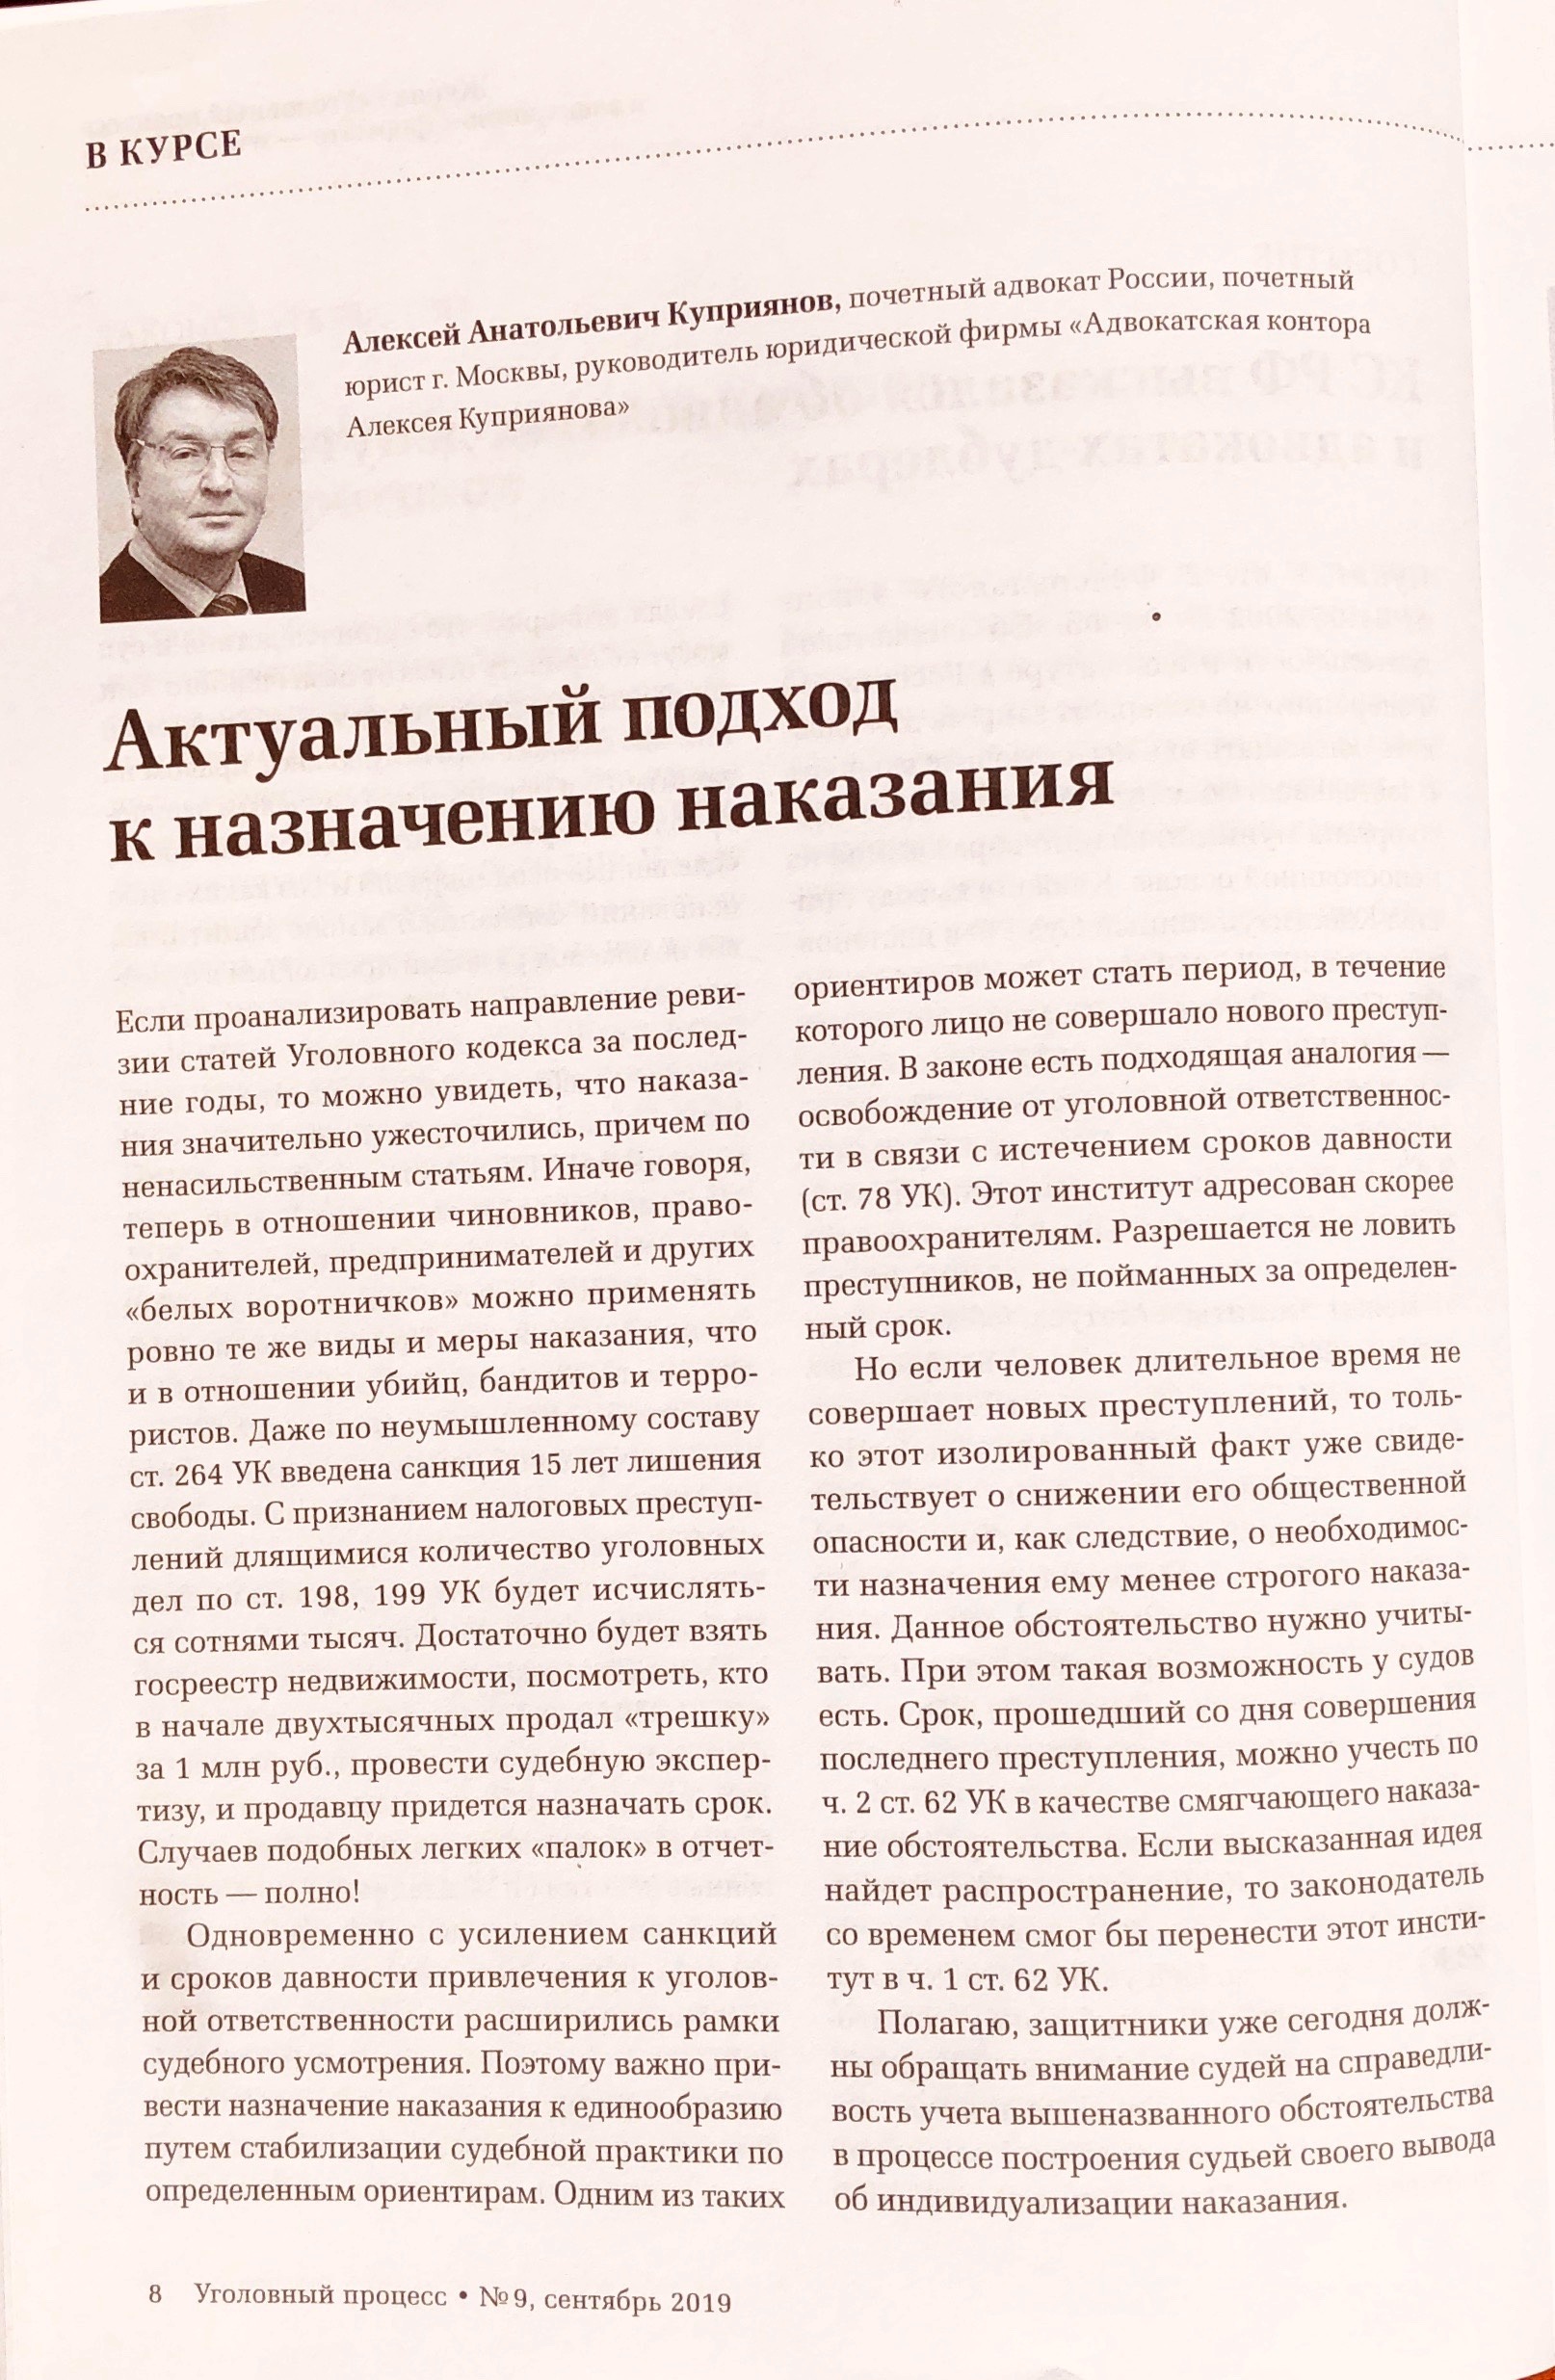 Статья адвоката Алексея Куприянова в журнале "Уголовный процесс" № 9 - 2019